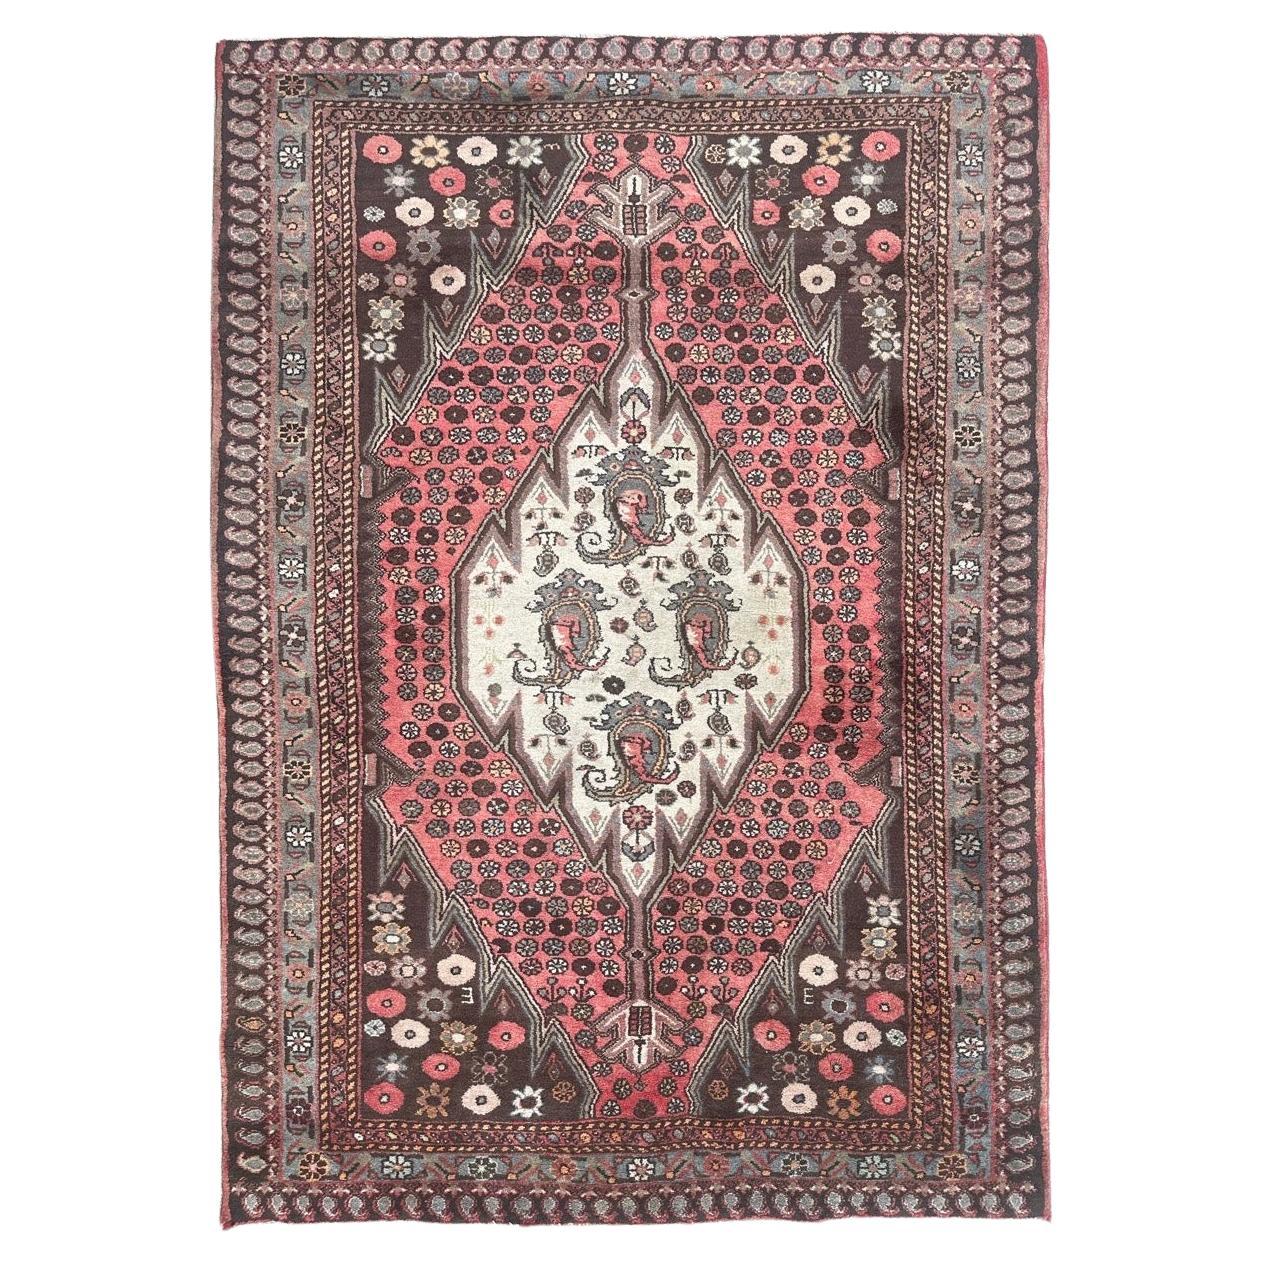 Bobyrug’s pretty vintage Hamadan rug